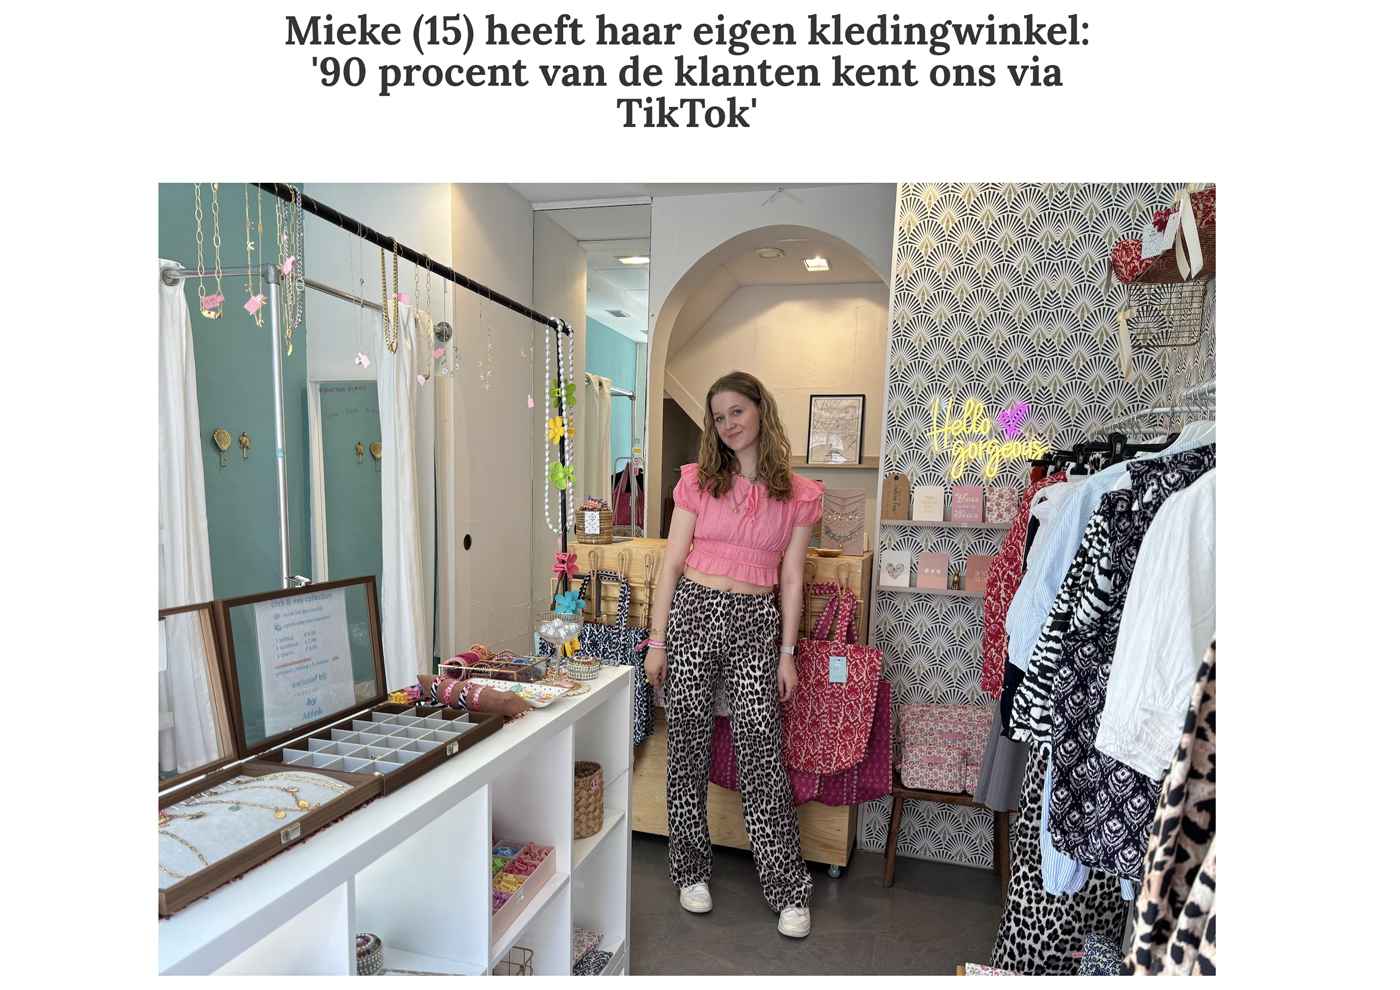 Mieke (15) heeft haar eigen kledingwinkel: '90 procent van de klanten kent ons via TikTok'